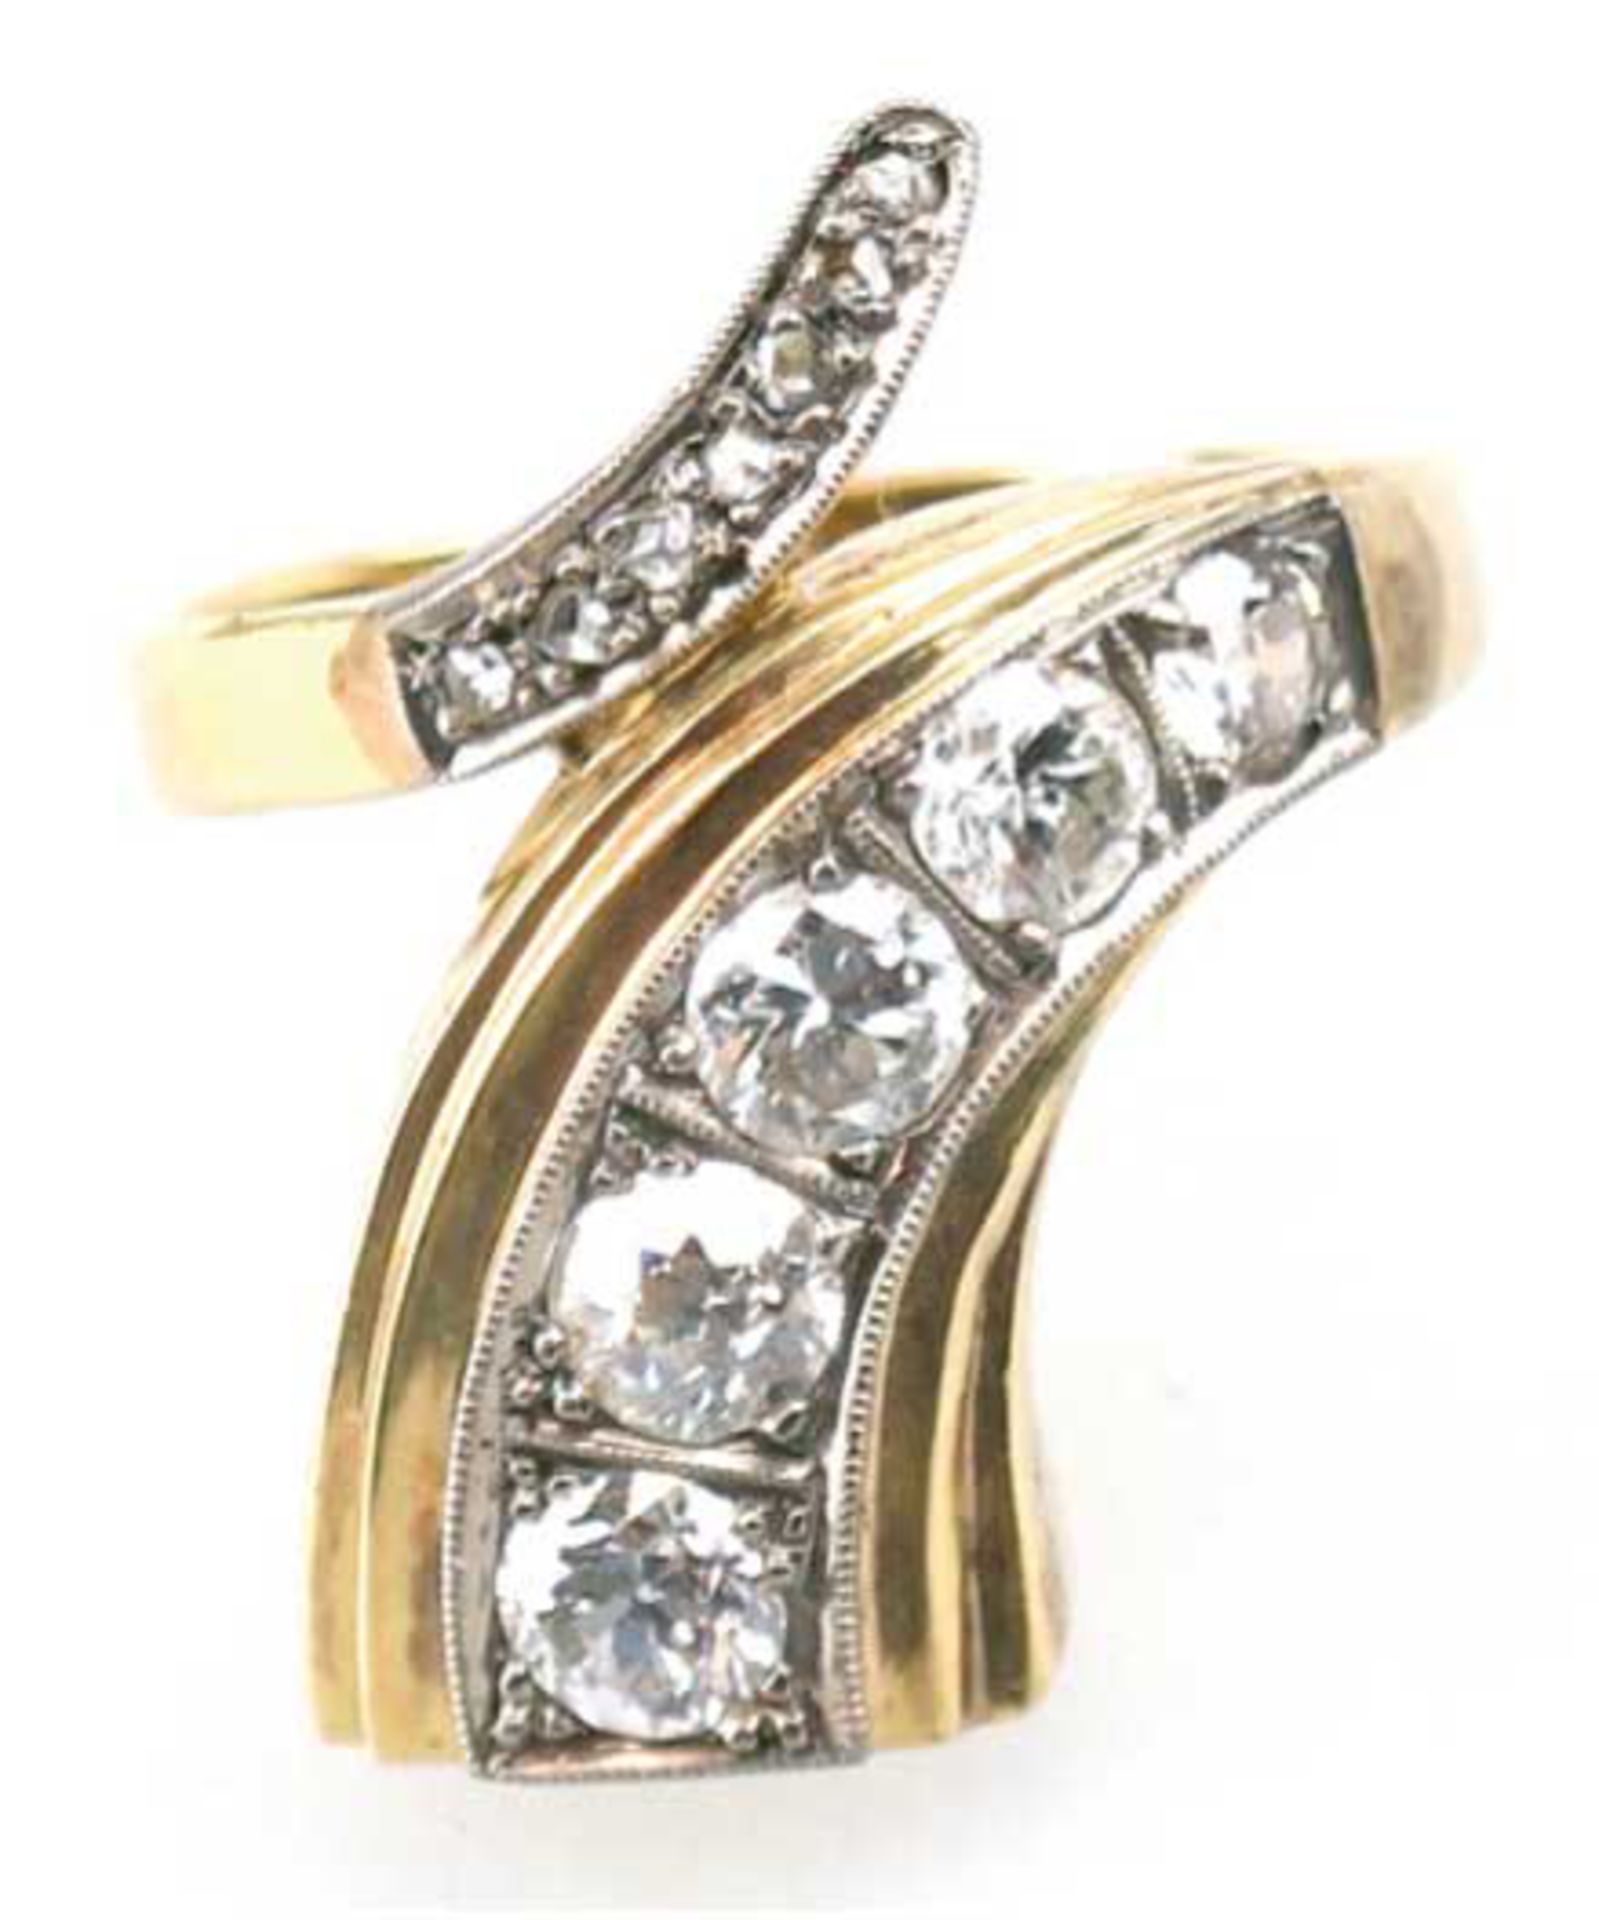 Ring, 585er GG, Gew. 6,1 g, punziert mit "Handarbeit", Brillanten und Diamanten, ca. 1,2ct., TW-